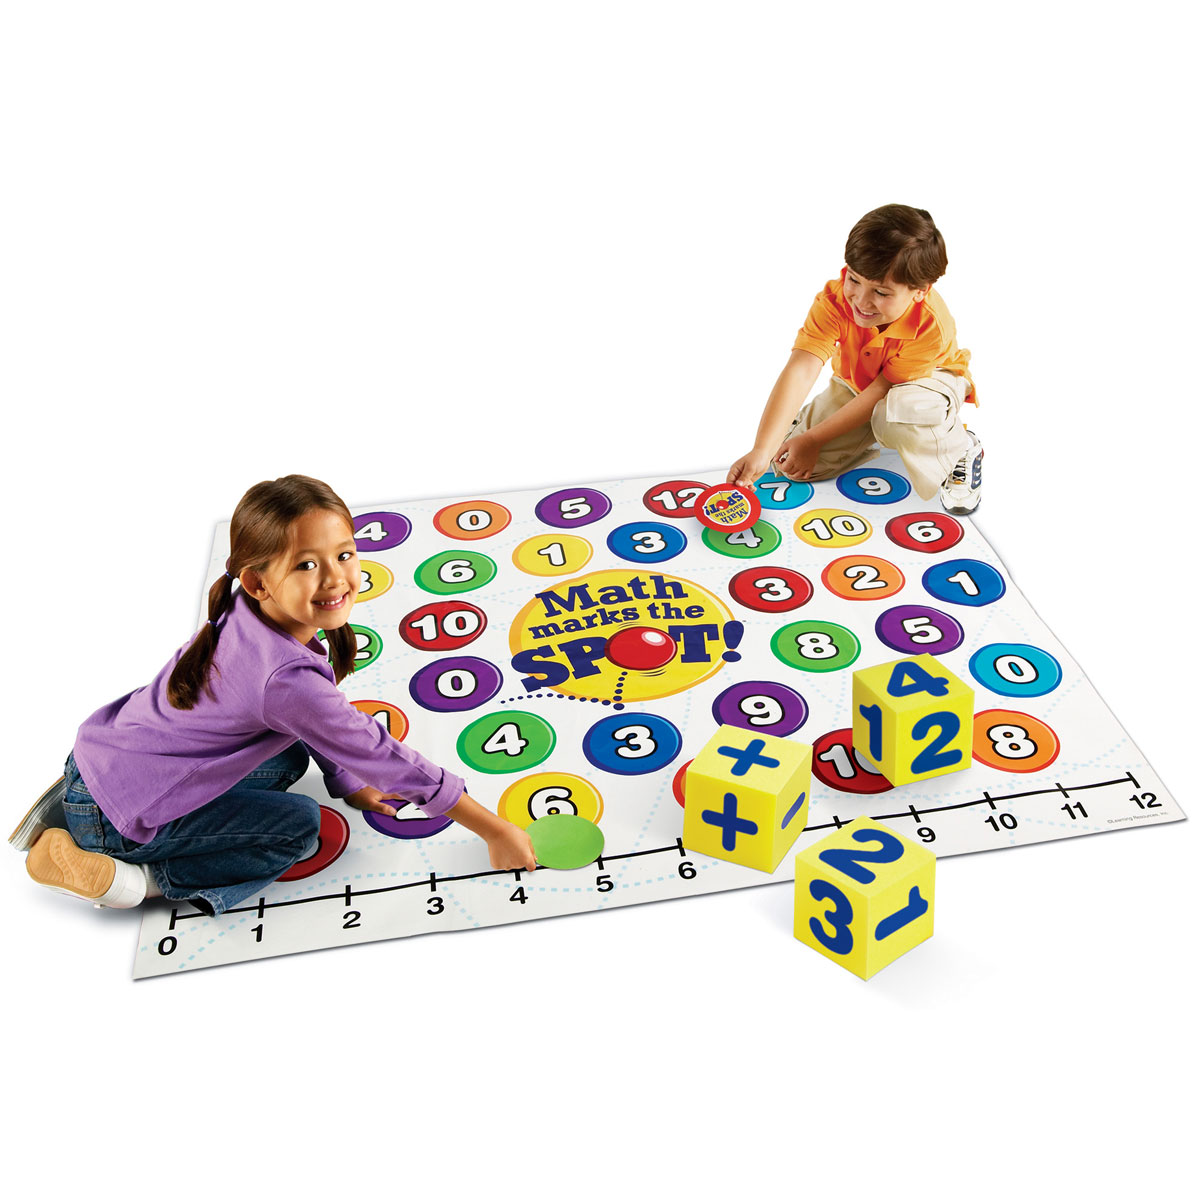 Познавательные игры 8. Обучающая игрушка. Настольные игры для детей. Математическая игрушка для детей. Развивающие игры для детей.